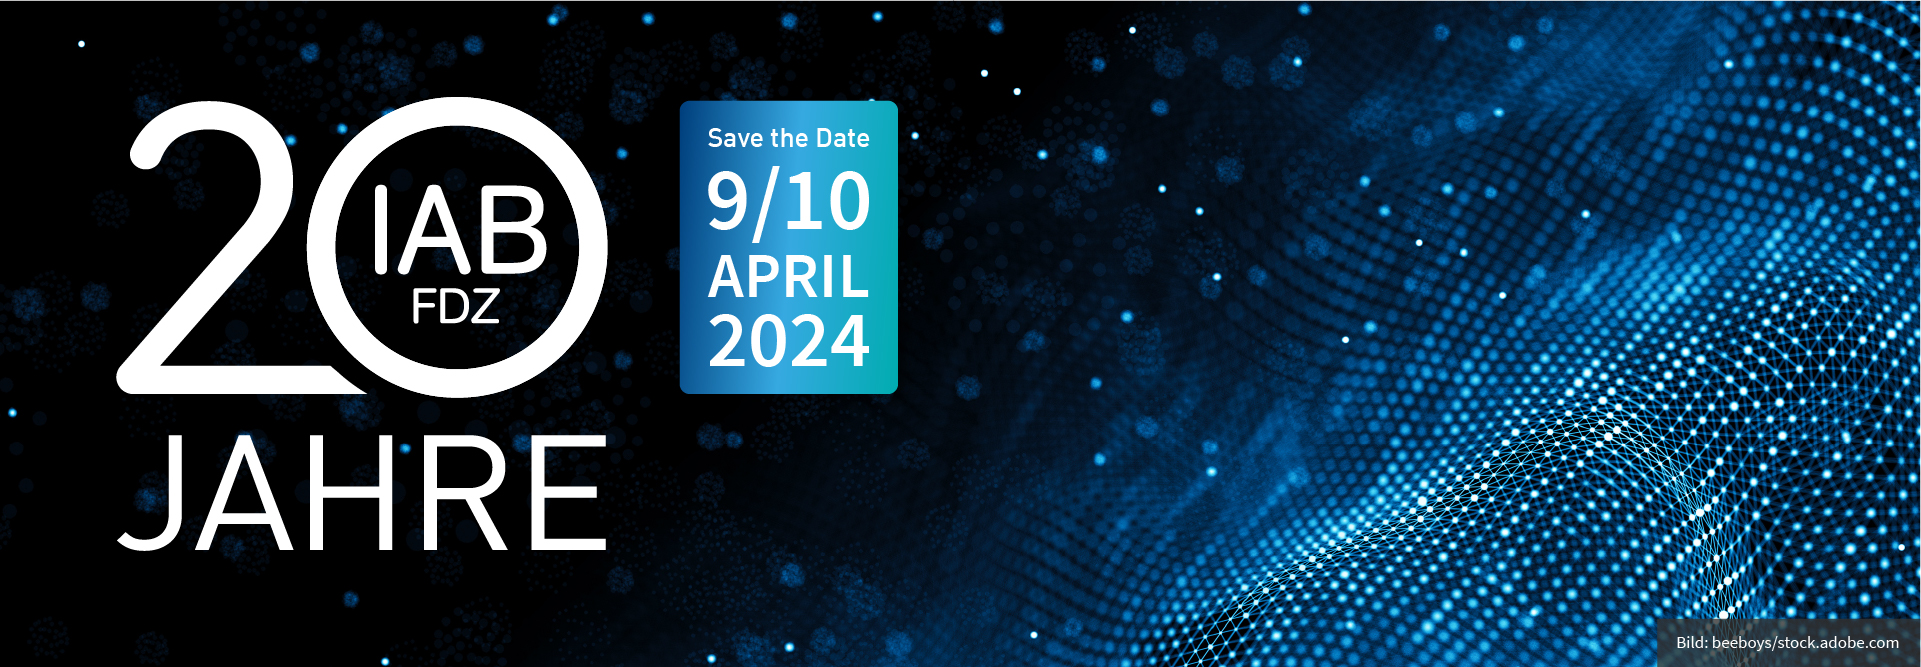 Das Bild zeigt ein glänzendes Netz und die Aufschrift 20 Jahre des IAB-FDZ Save the Date 9/10 April 2024.